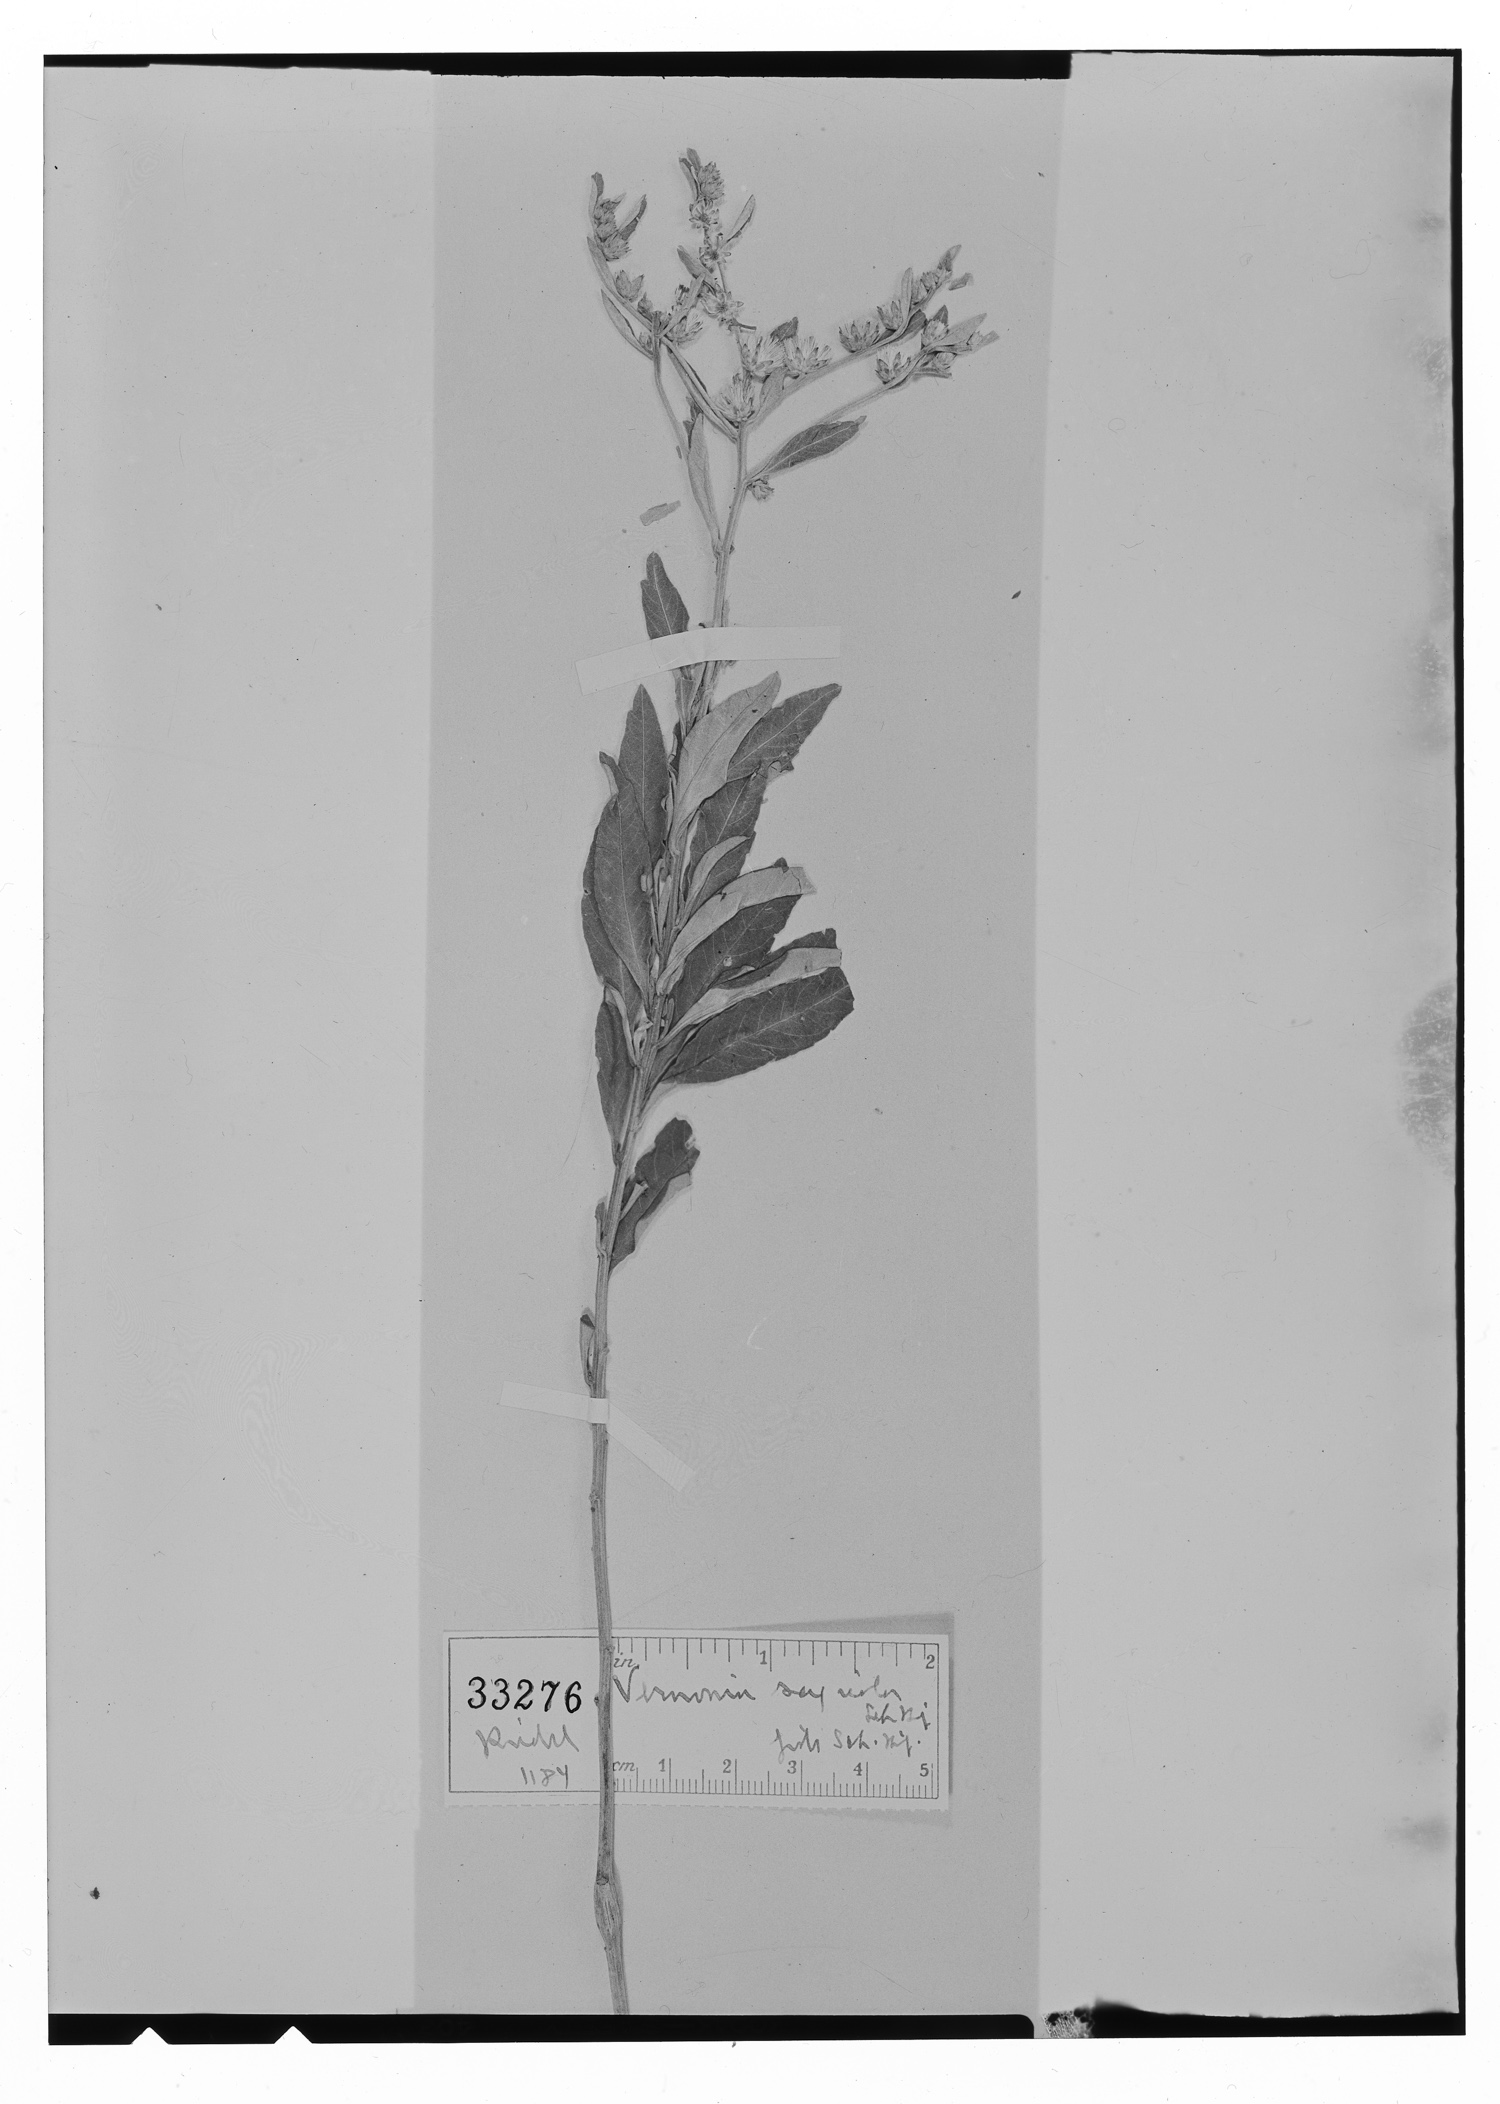 Lepidaploa rufogrisea image